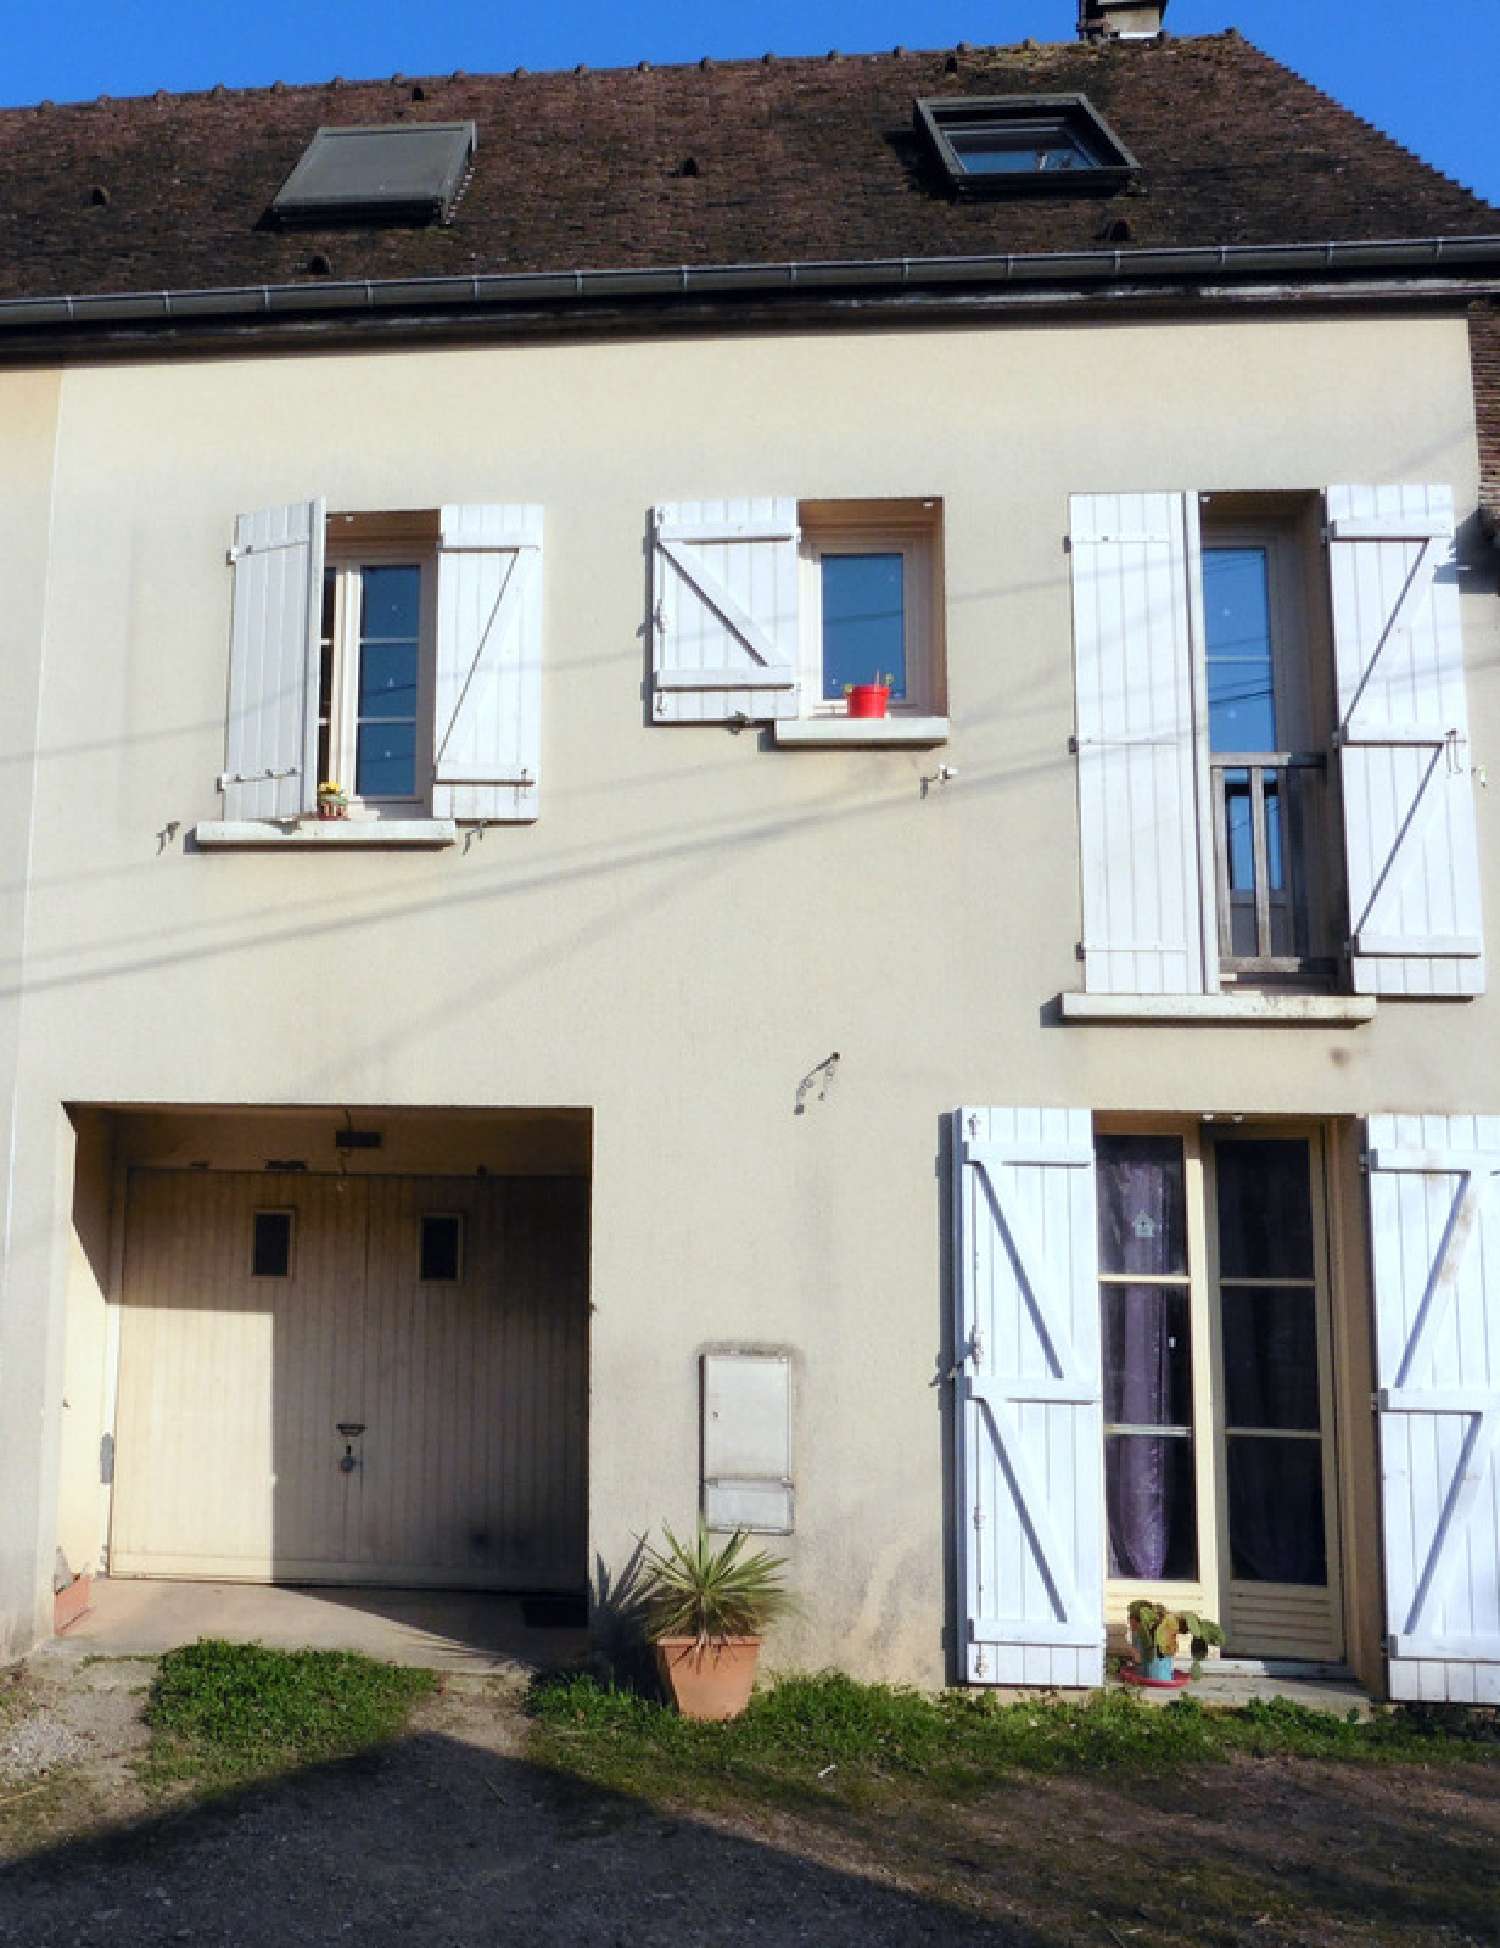  for sale village house Villeneuve-l'Archevêque Yonne 1